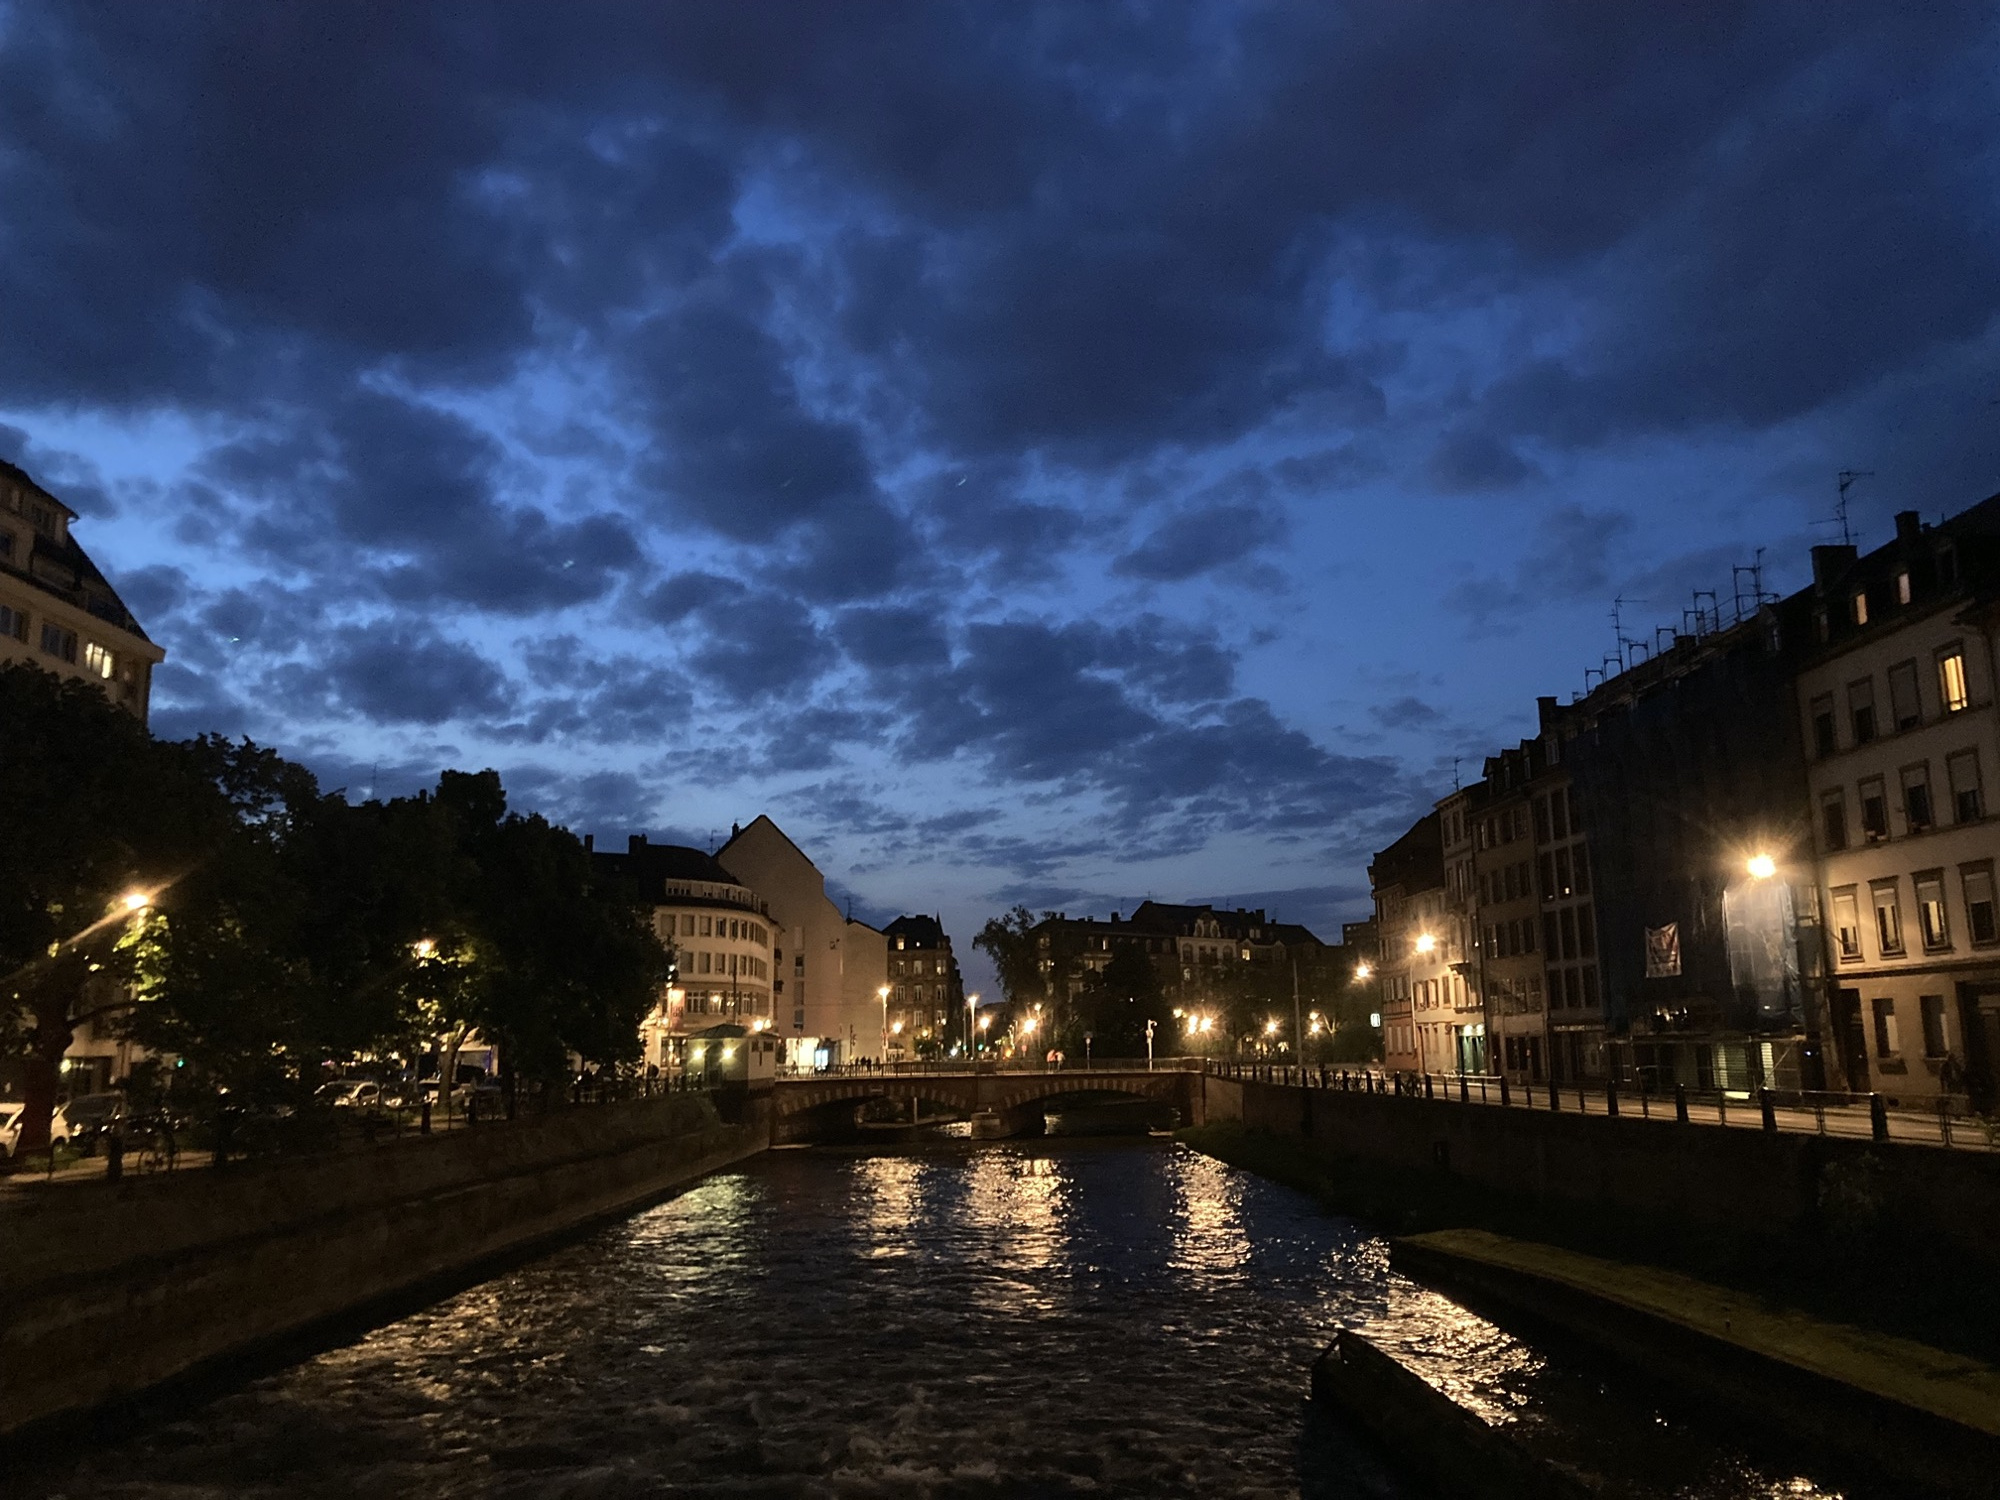 Brücke über einen Fluss, im Fluss spiegeln sich die Lichter der umliegenden Gebäude, mittig im Hintergrund ist der gerade noch dunkelblaue Himmel leicht bewölkt